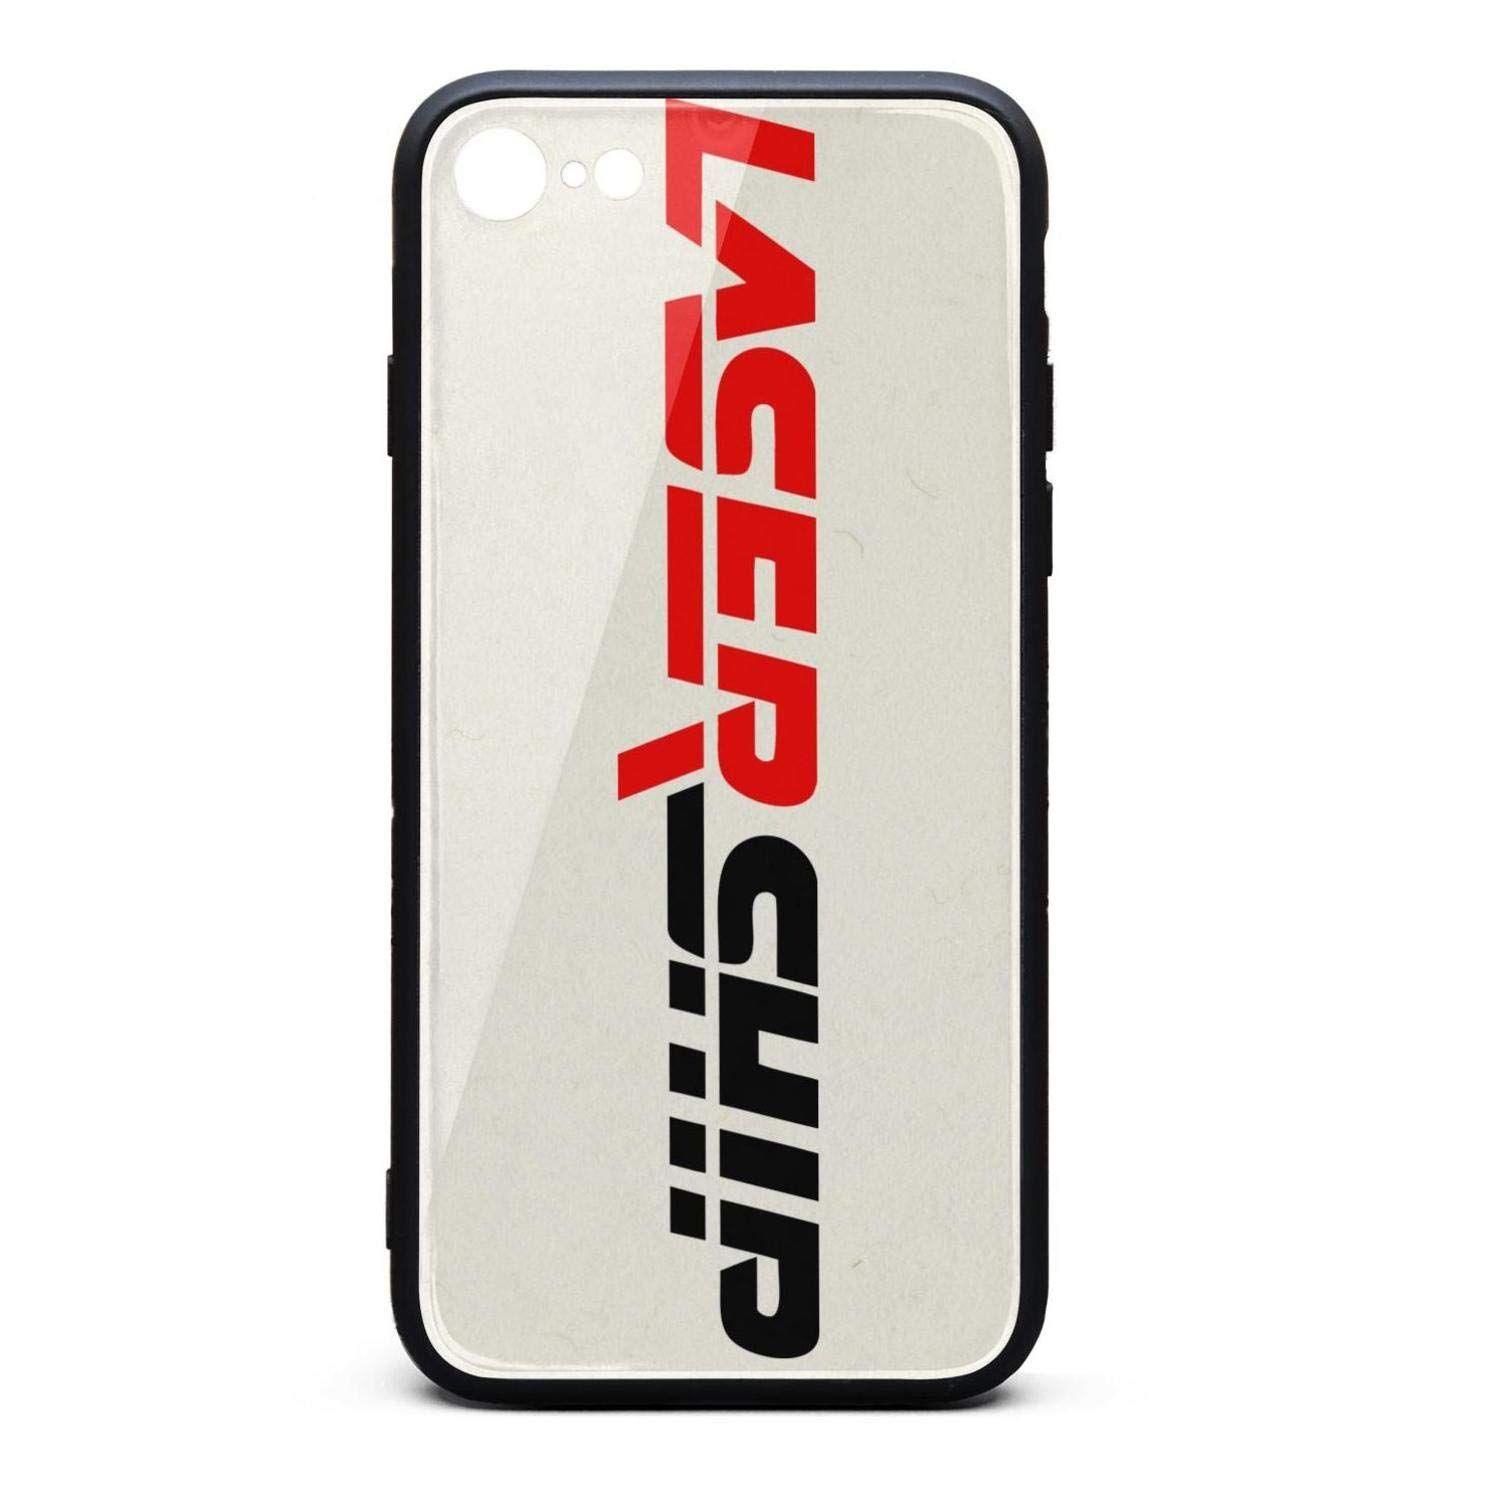 LaserShip Logo - Amazon.com: I-Phone 6/6s Case Protective Case Anti-Scratch LaserShip ...